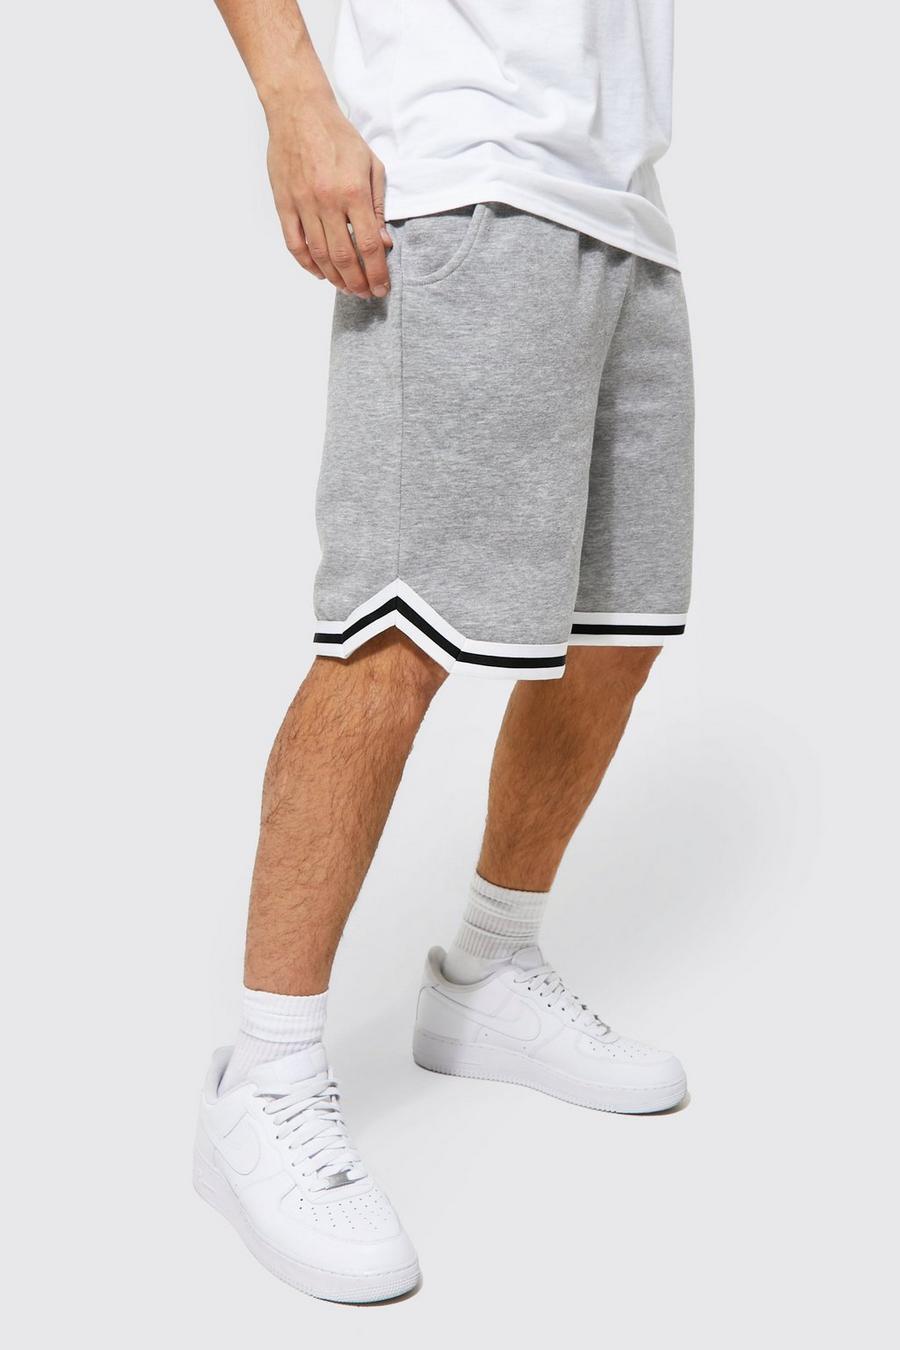 Pantalón corto estilo baloncesto con cinta y algodón ecológico, Grey